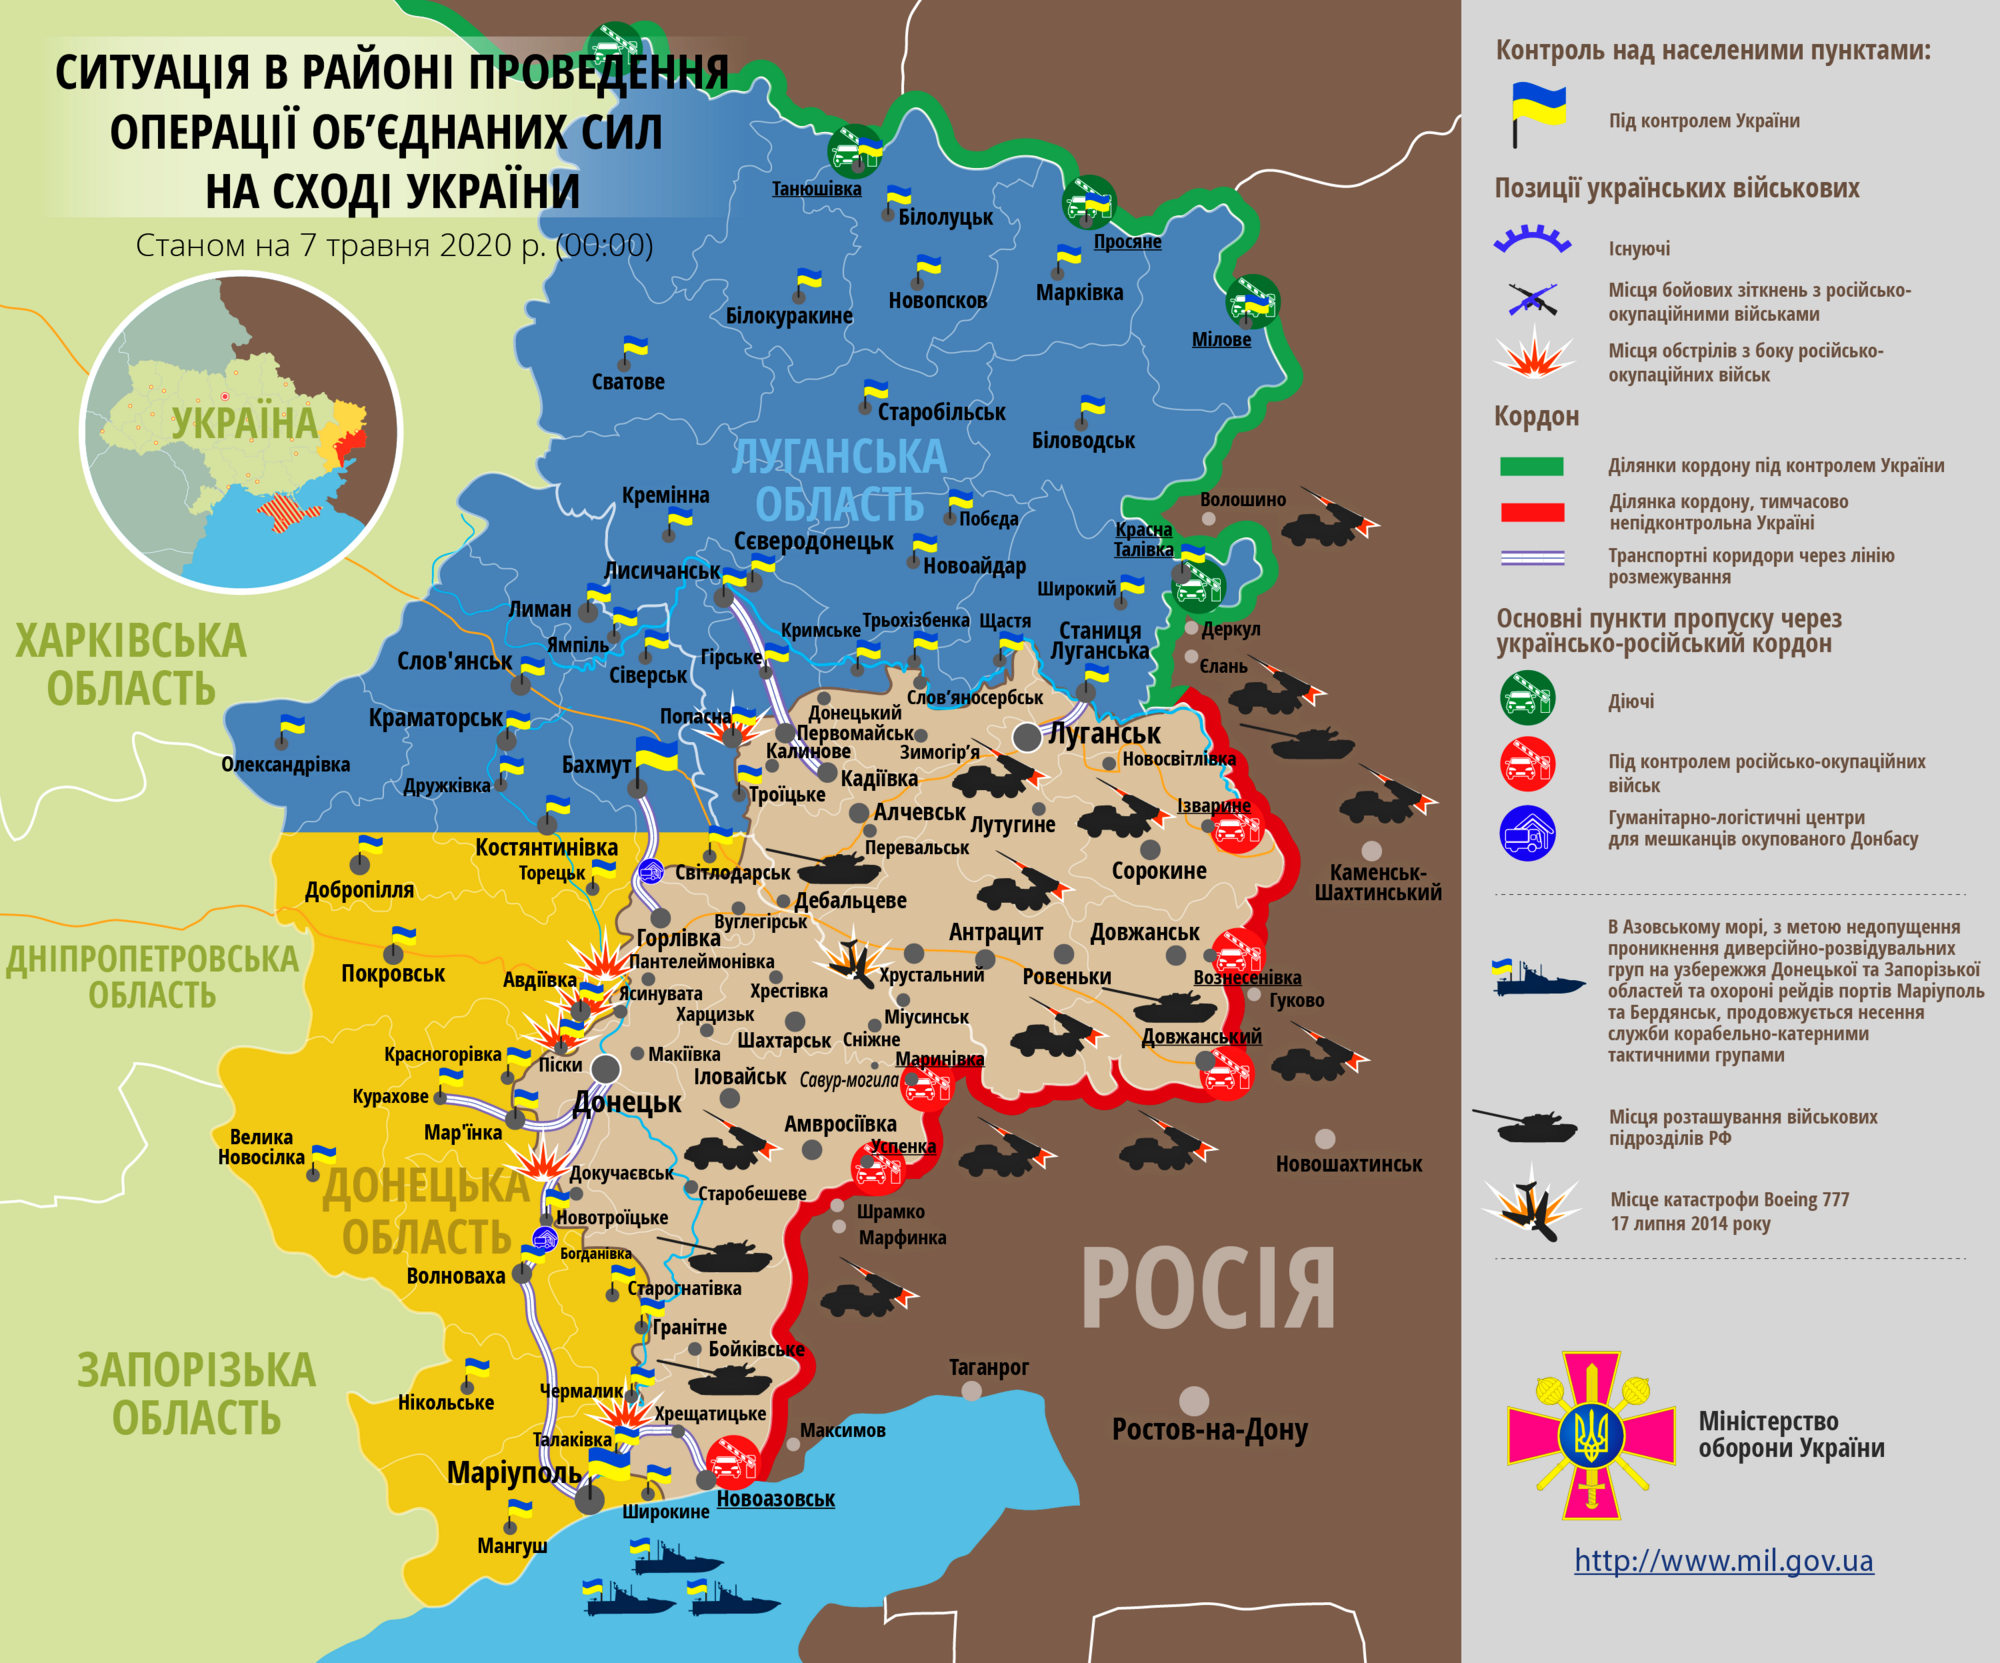 Ситуация в зоне проведения ООС на Донбассе 7 мая